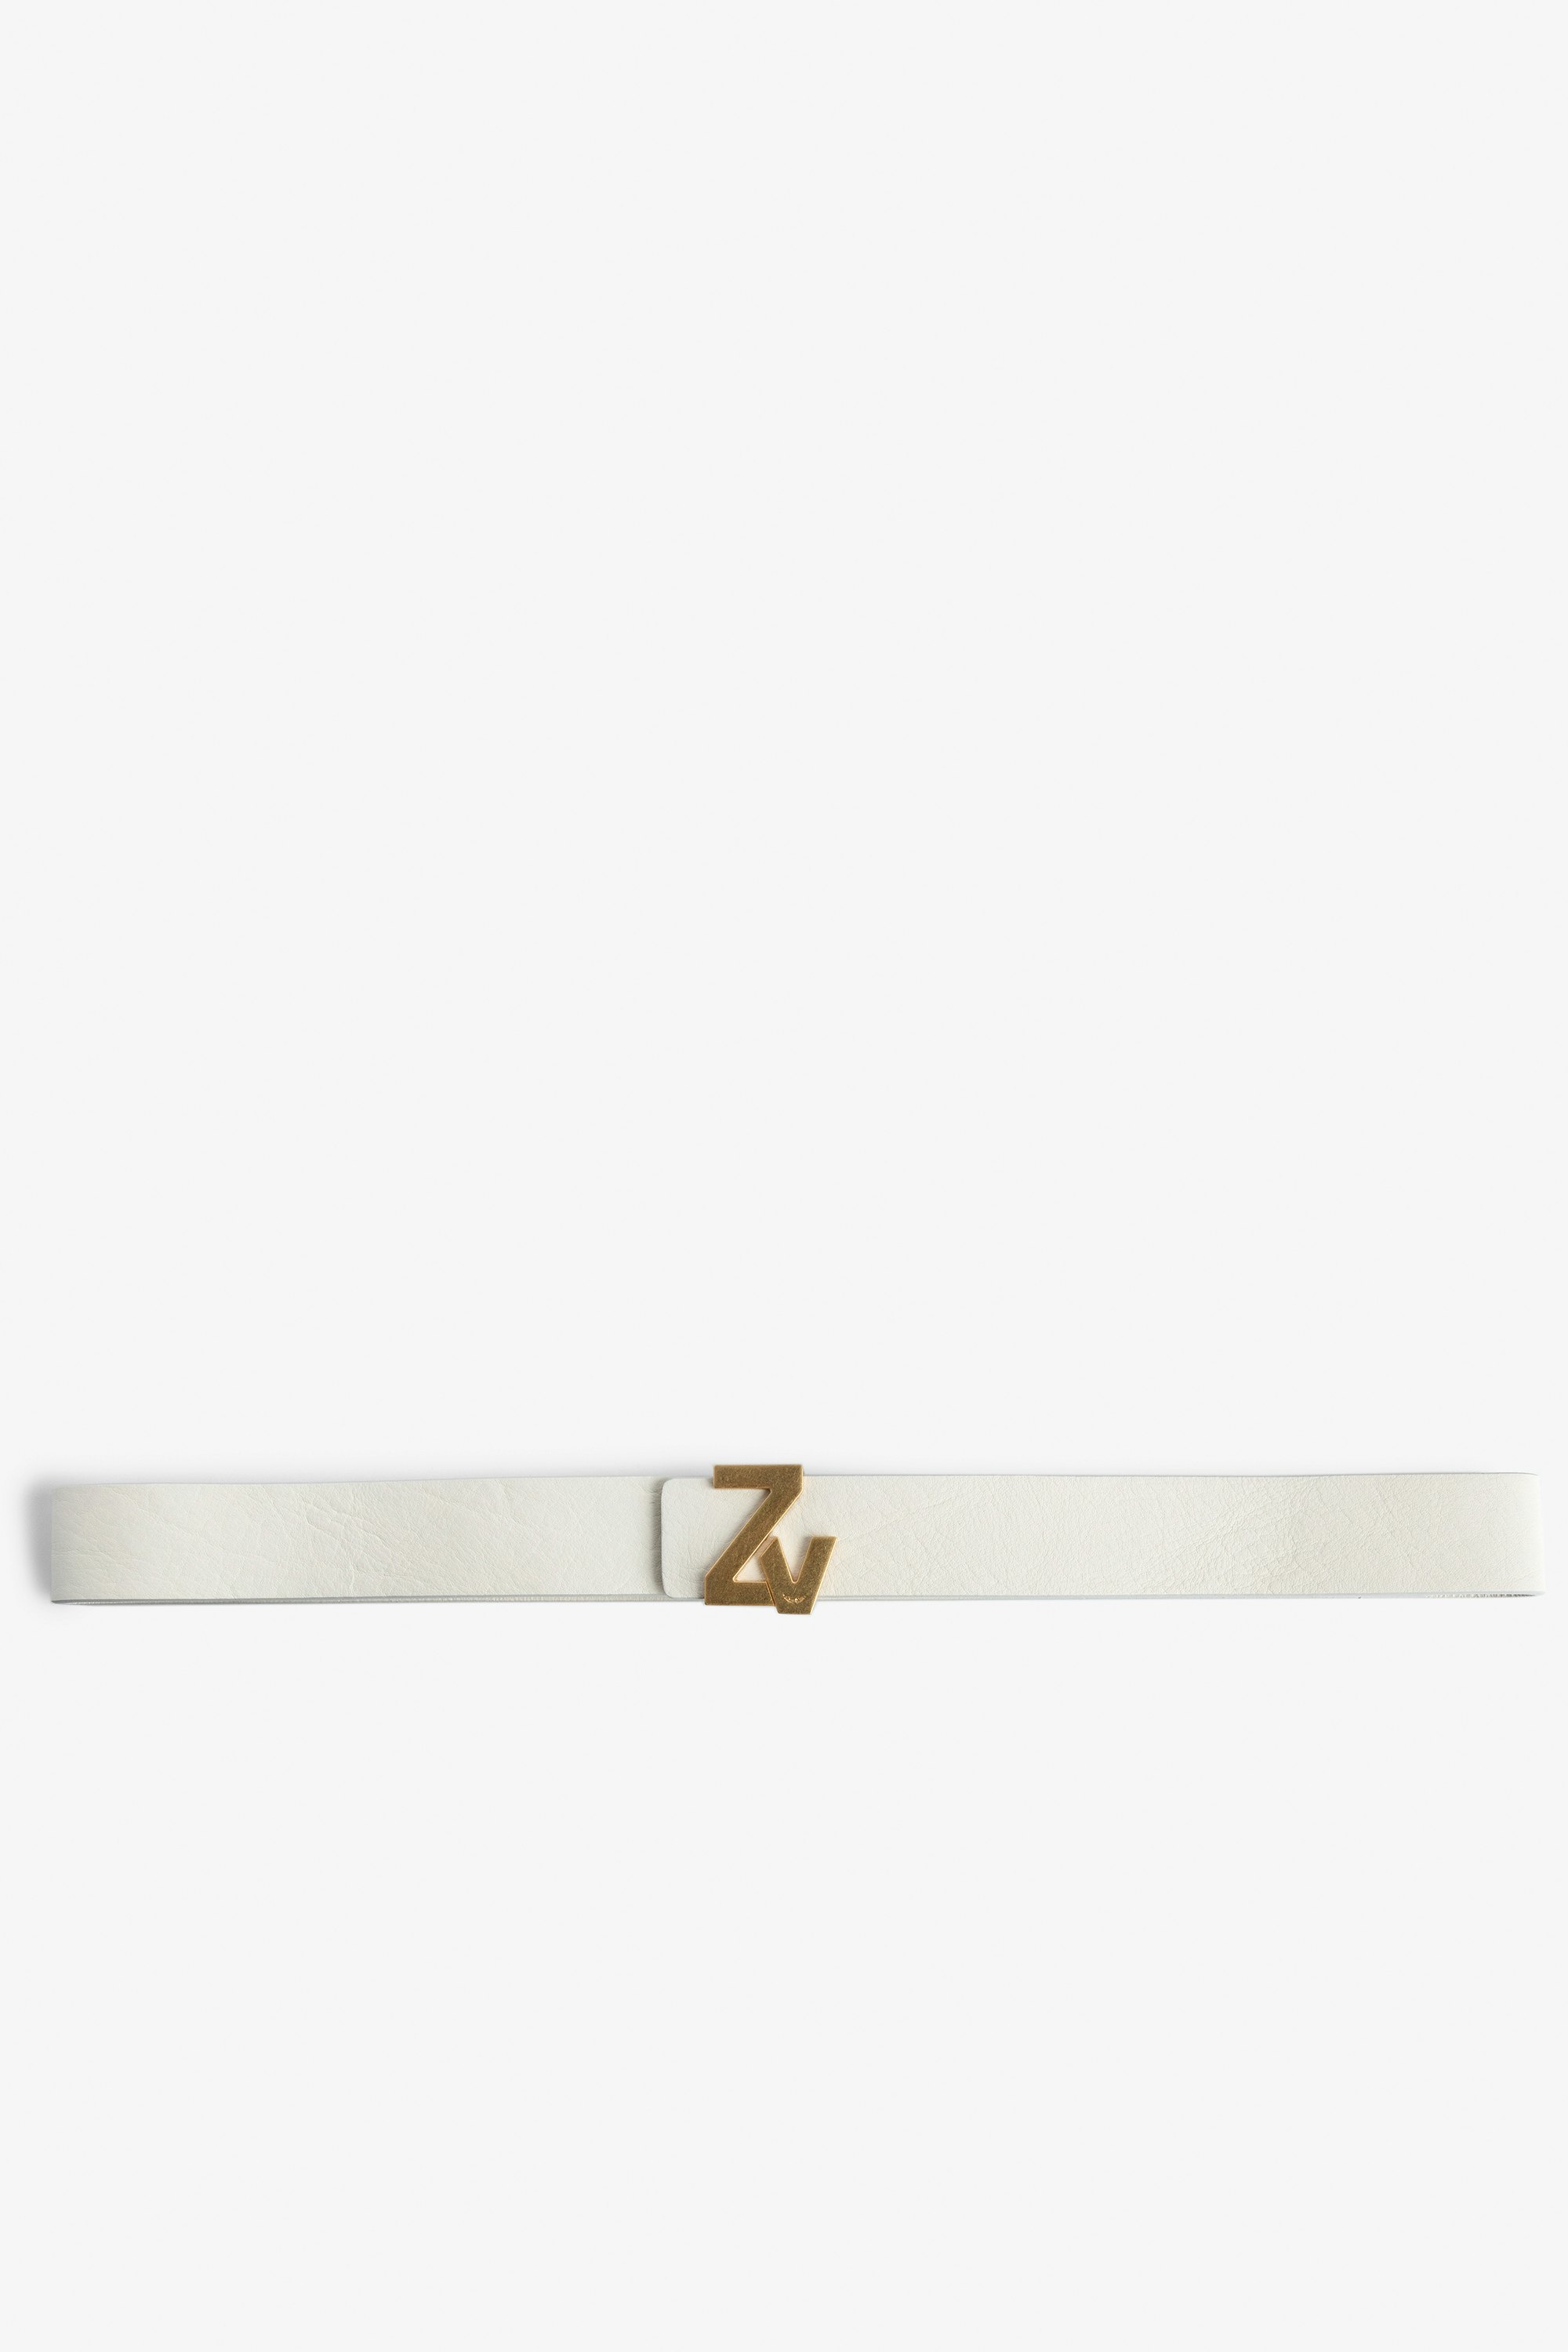 ZV Initiale La Belt Women's belt in ecru leather with gold-tone ZV buckle.